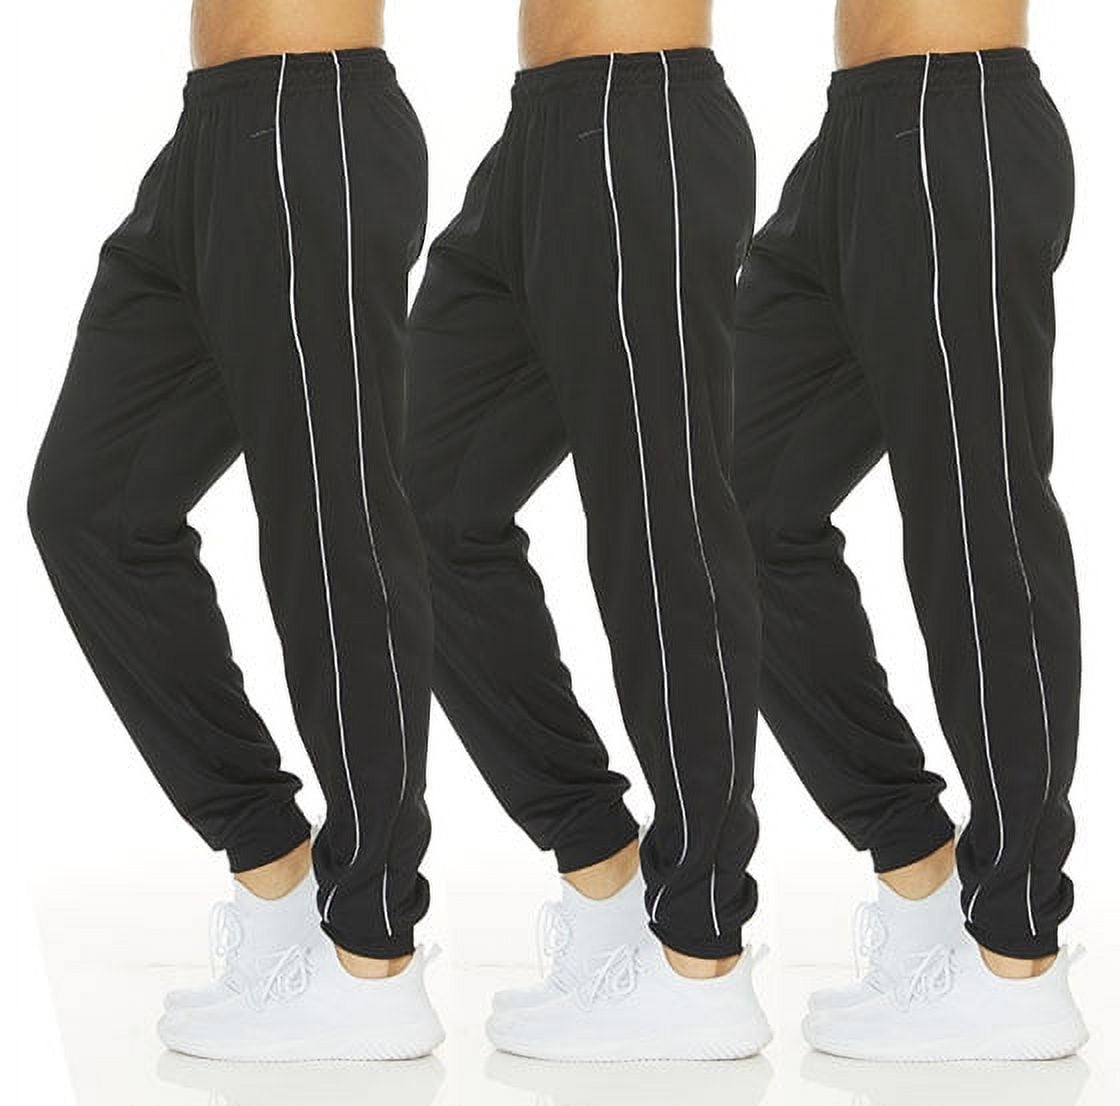 Joggers for Men - 3 Pack Jogger Pants - Fleece Tech Dry Fit